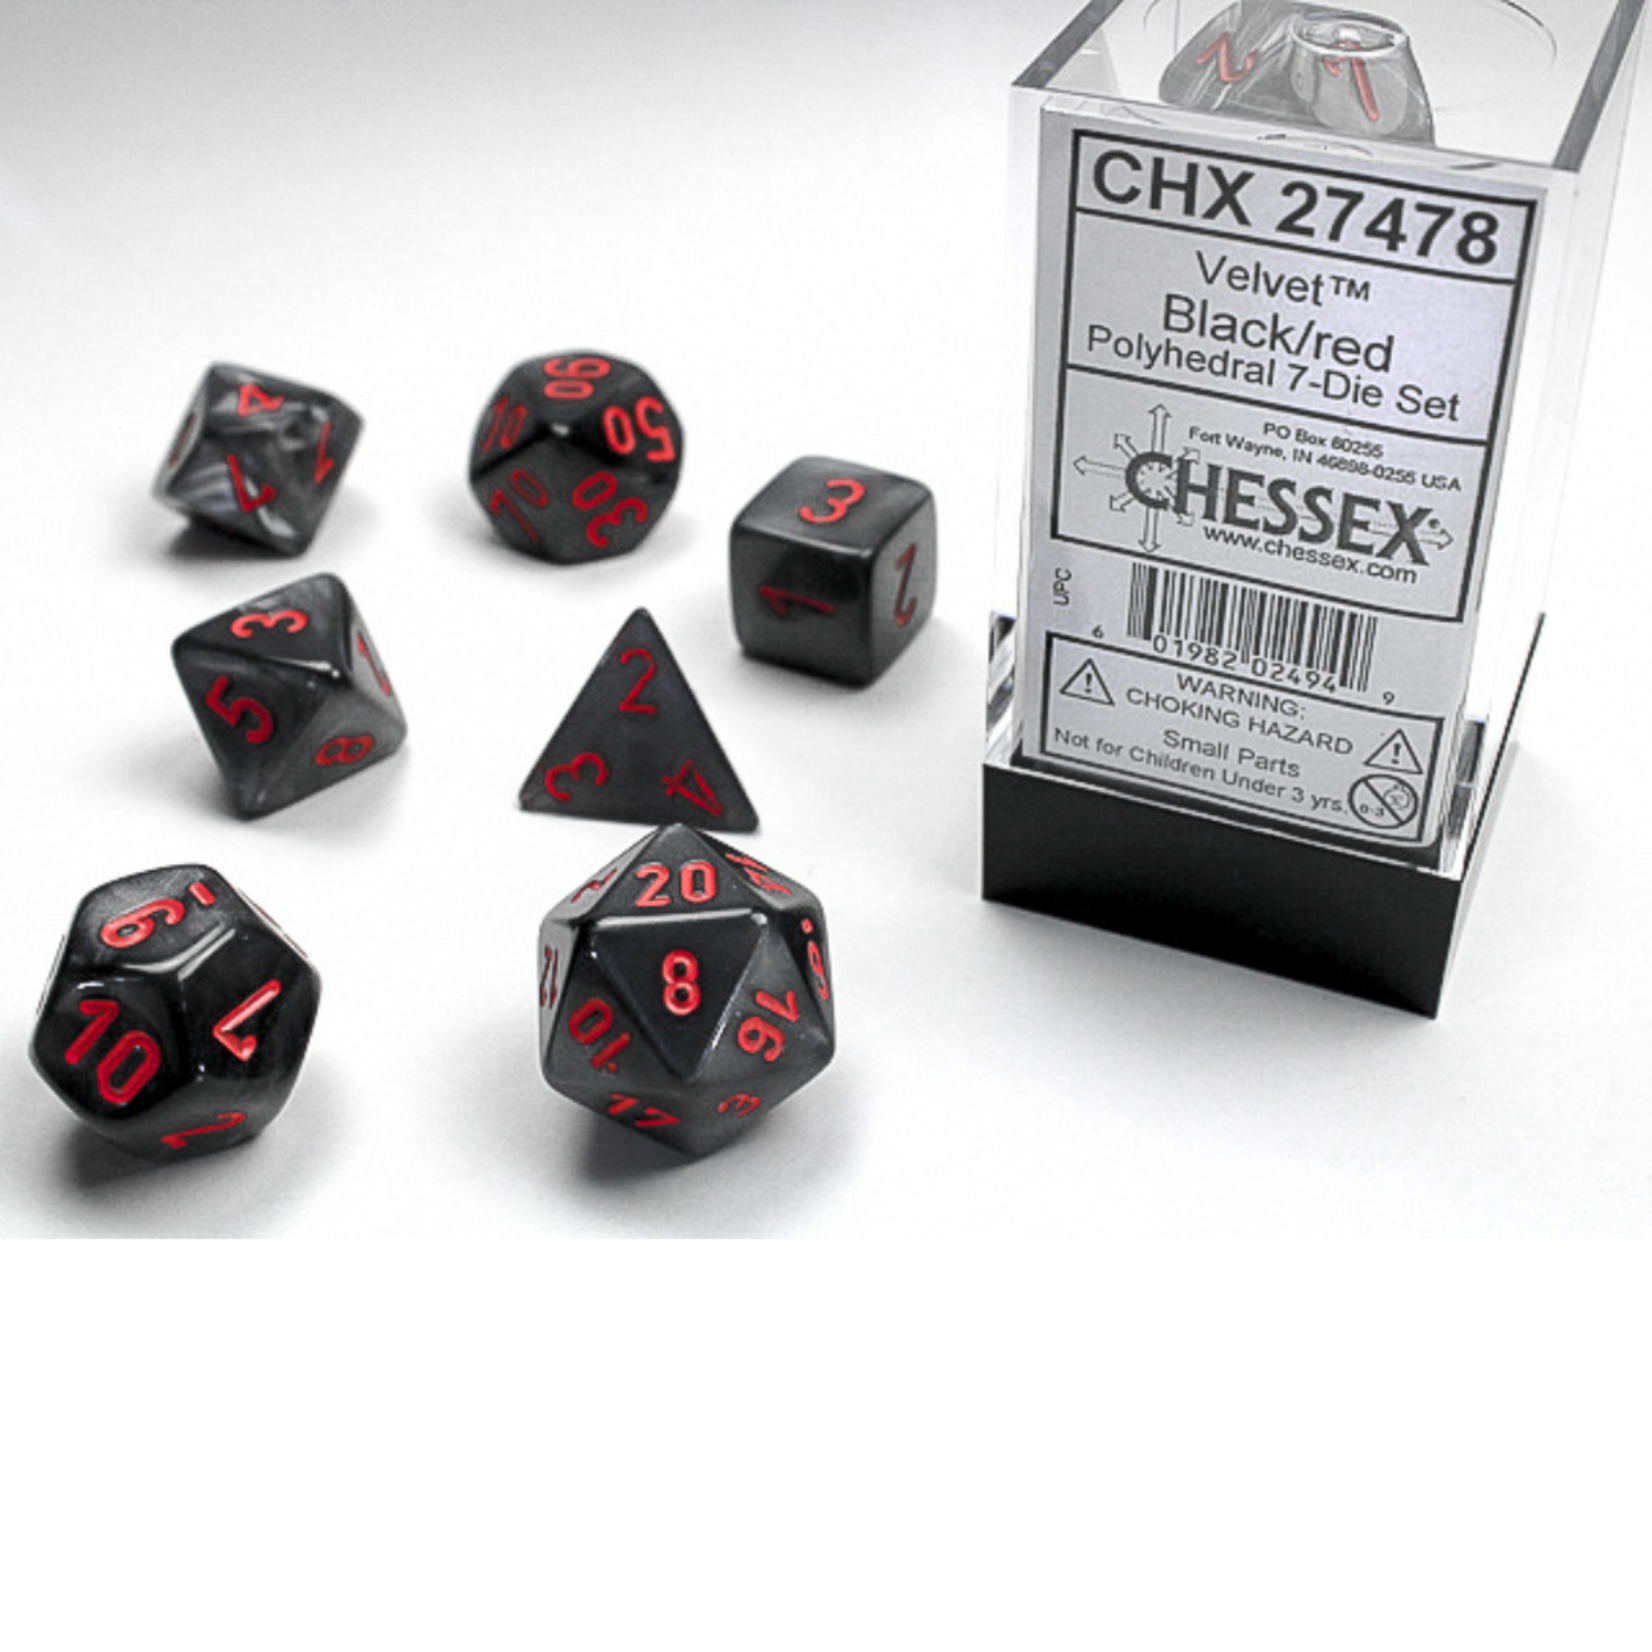 Chessex Kit de Dés Chessex Velvet Black/Red 27478 7-Die